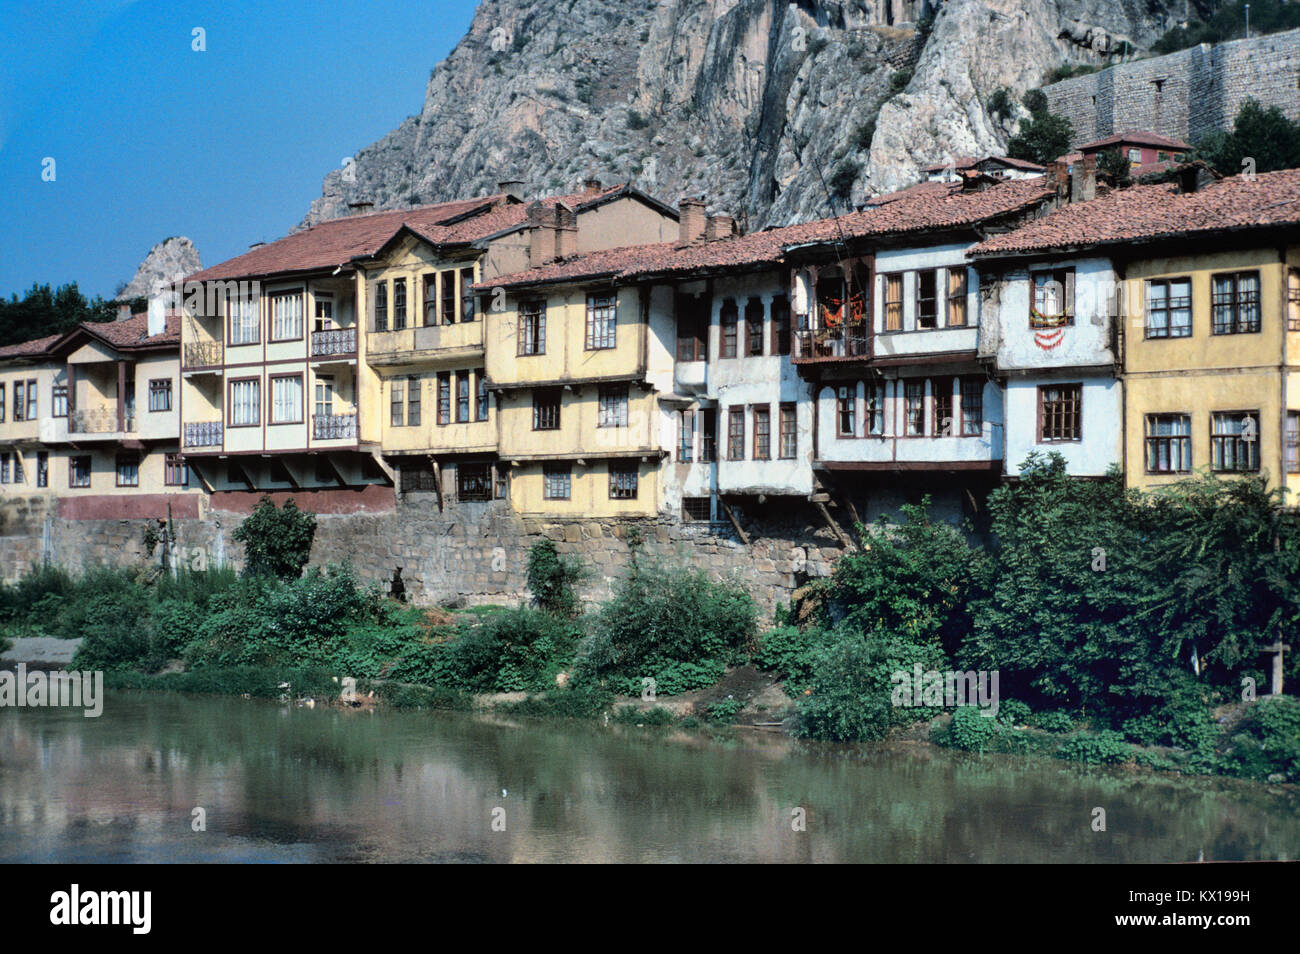 Historique ou traditionnel en bois Maisons turques ottomanes le long de berges de la rivière Yesilirmak Amasya Turquie Banque D'Images